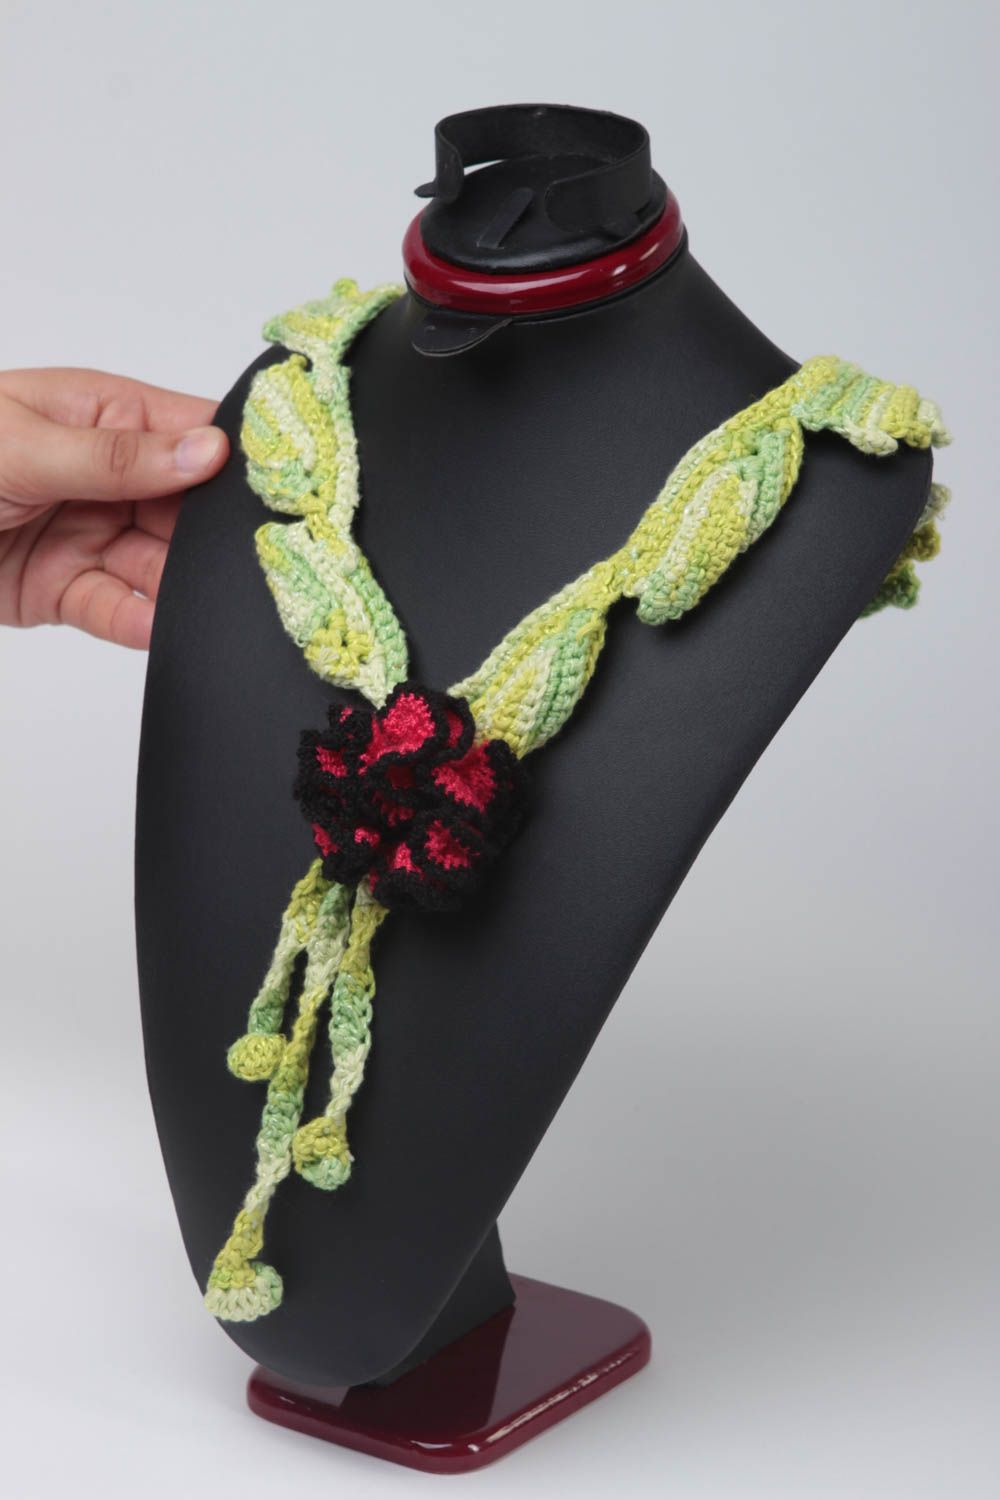 Collier textile Bijou fait main crochet vert fleur rouge noir Accessoire femme photo 5